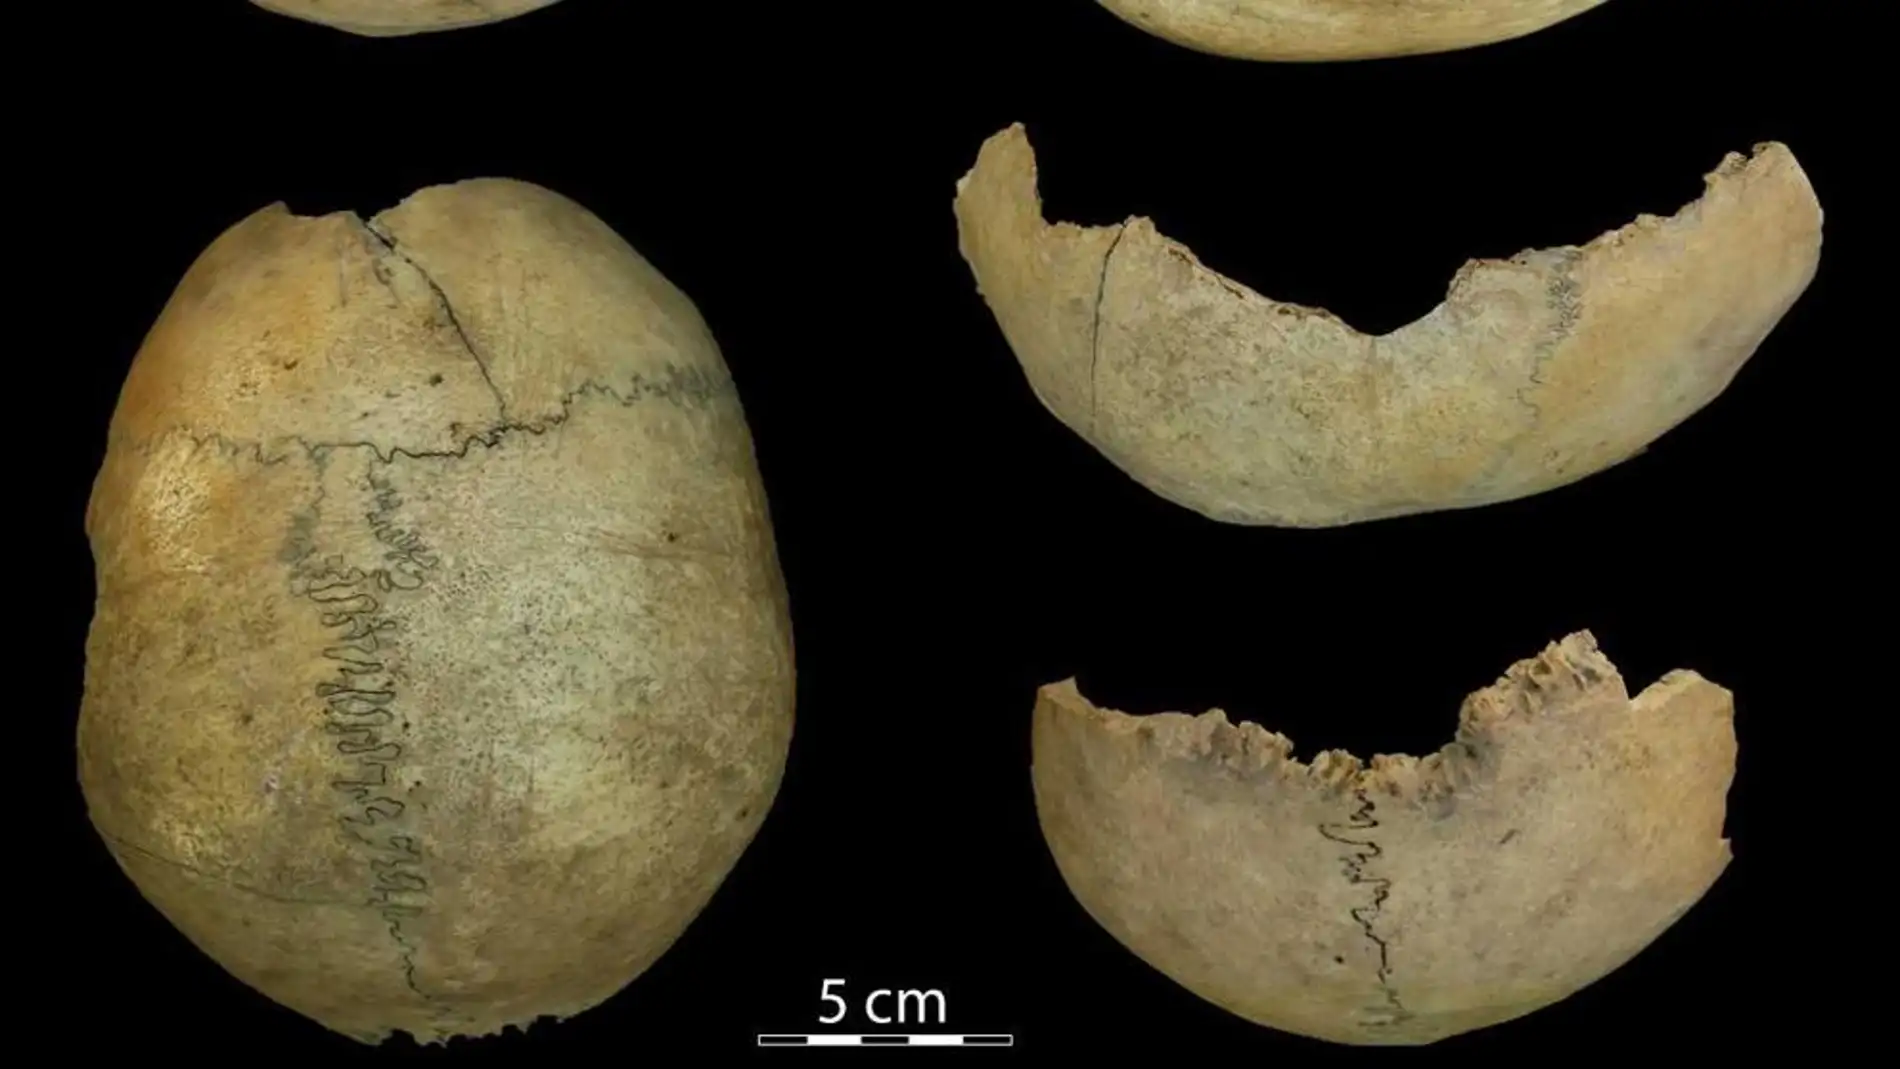 Hallan restos arqueológicos que revelan prácticas de canibalismo en el Neolítico Antiguo